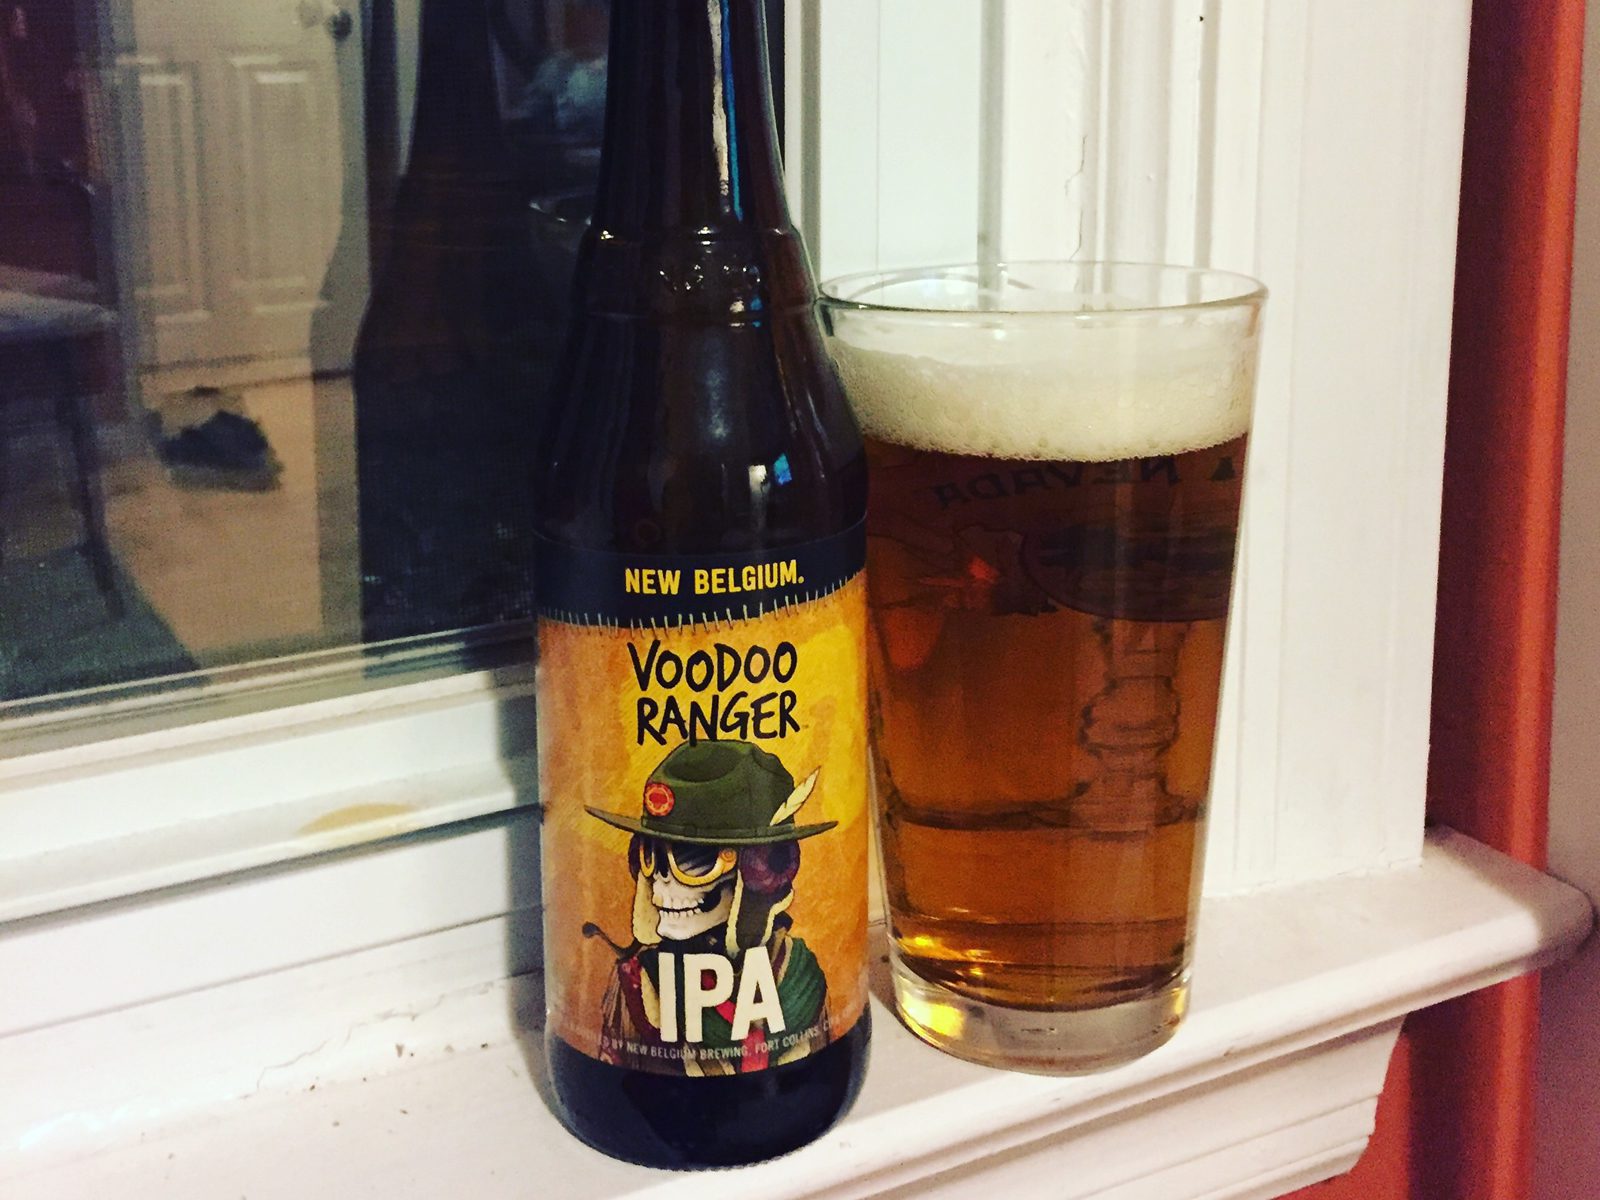 New Belgium Brewing Company: Voodoo Ranger IPA